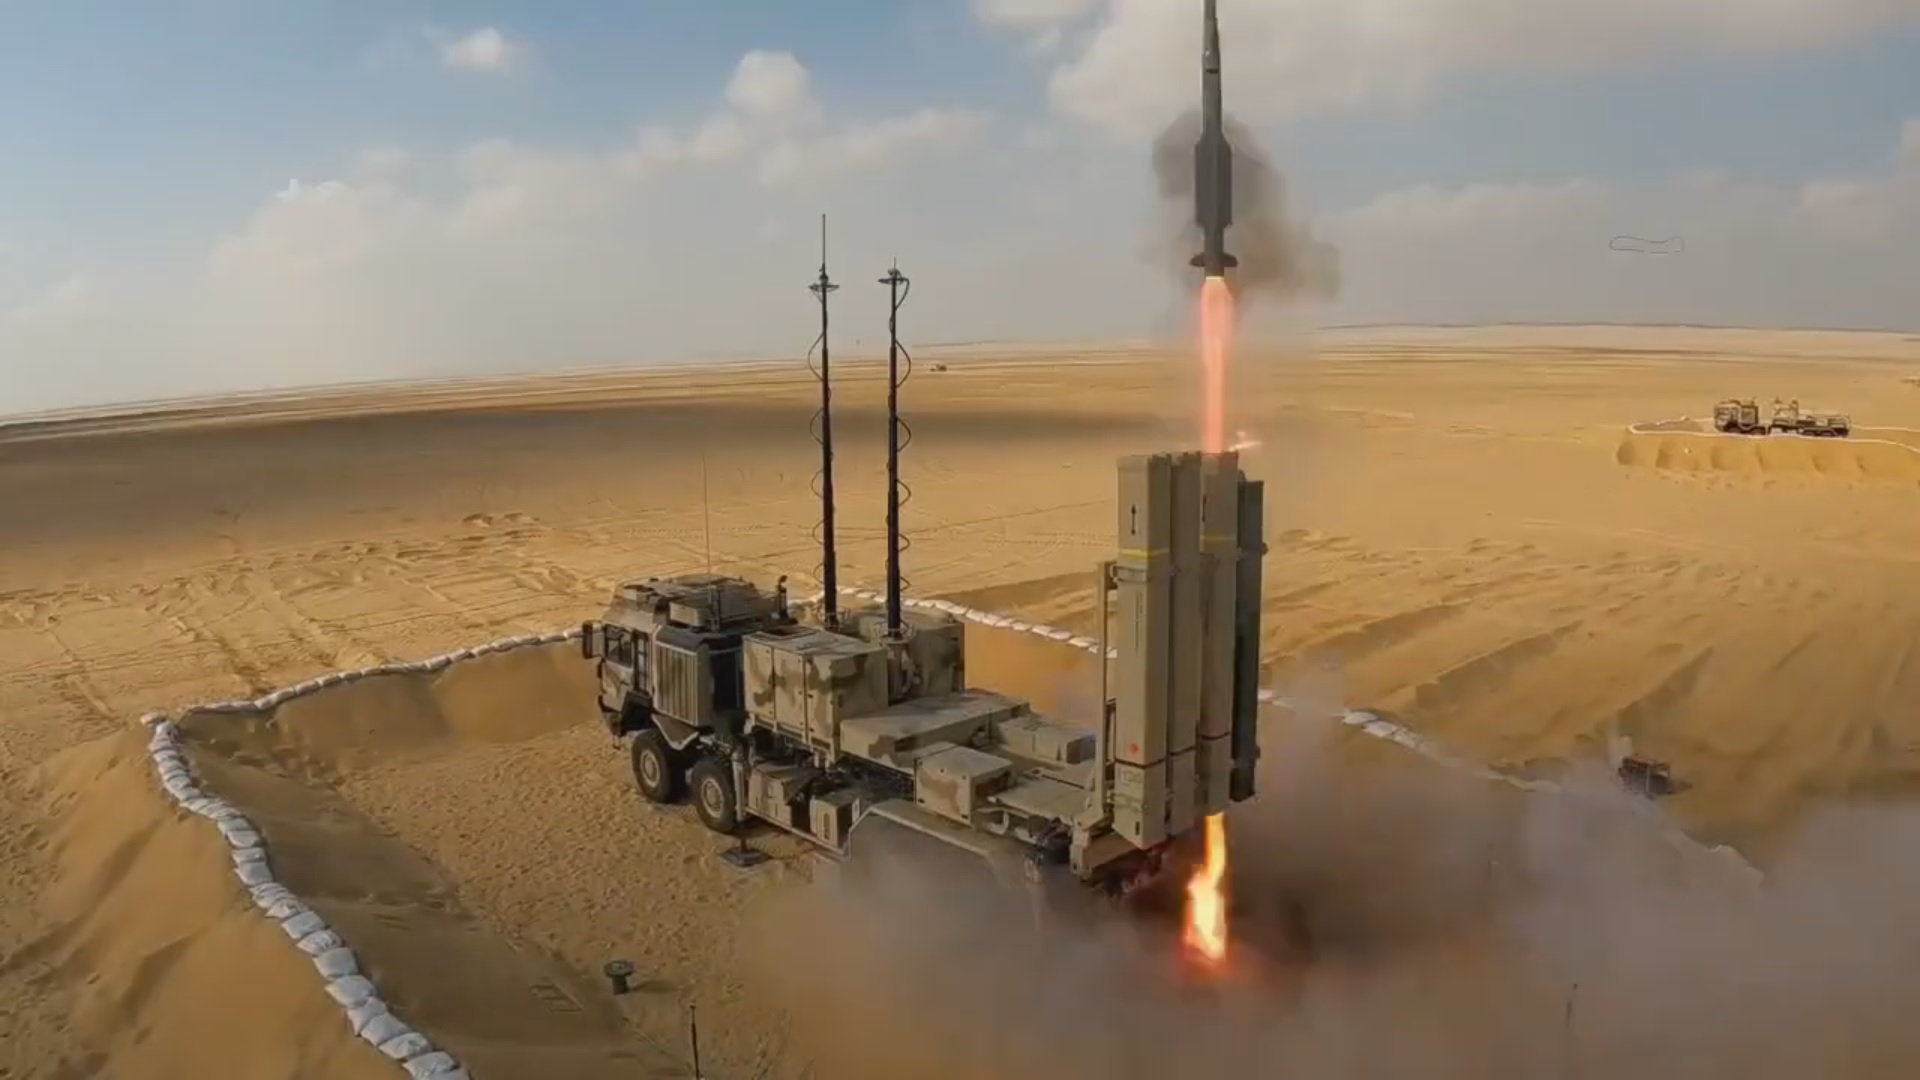 Das deutsche Boden-Luft-Raketensystem IRIS-T SLM hat eine 100-prozentige Wirksamkeit bei der Zerstörung von Drohnen nachgewiesen